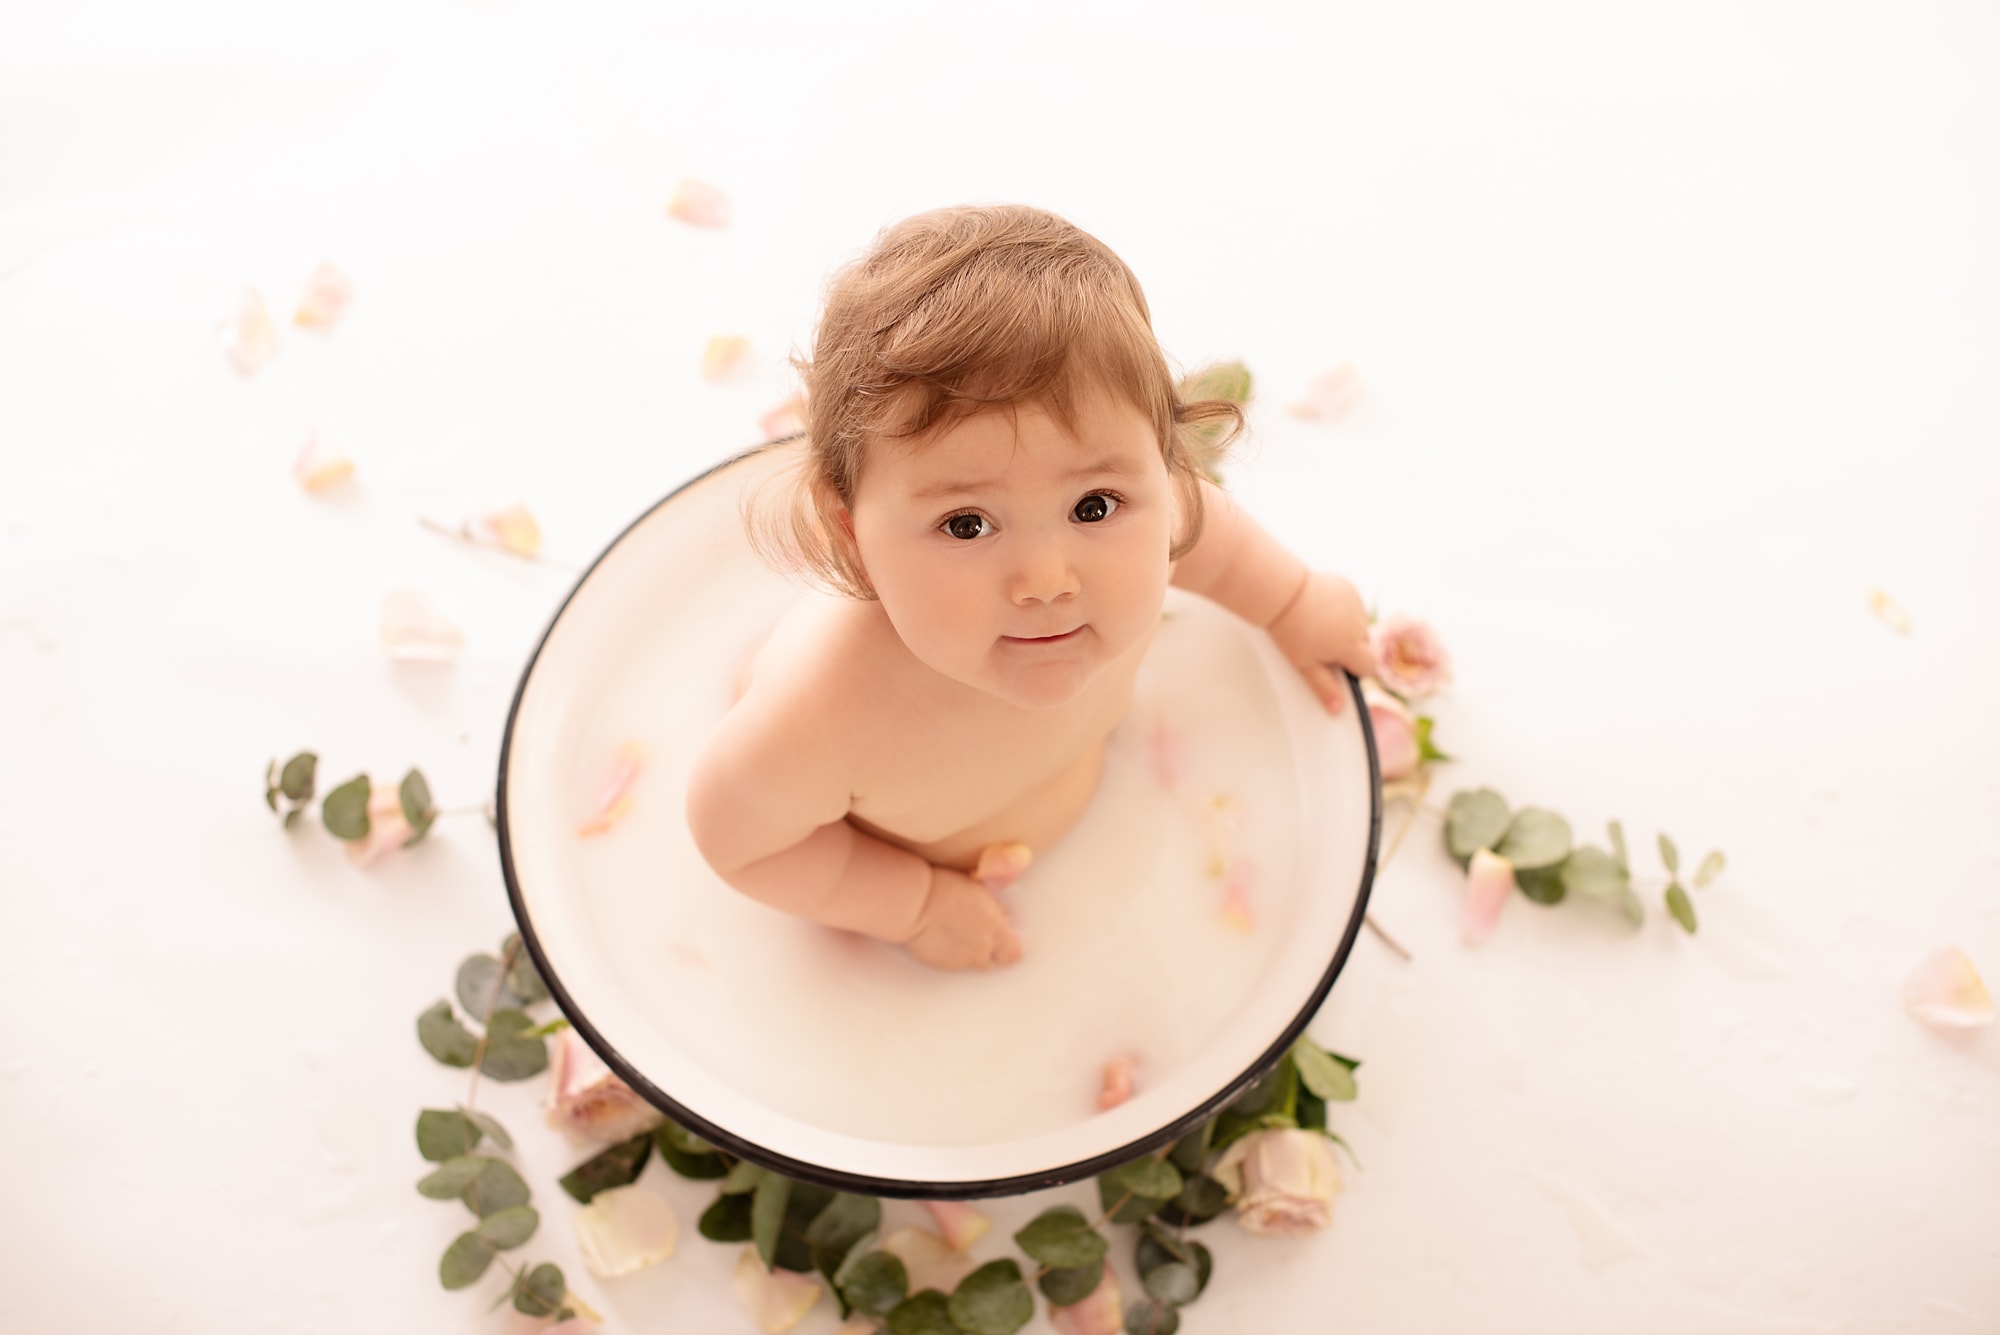 KinderfotosKarlsruhe - Babybauch & Neugeborenenbilder